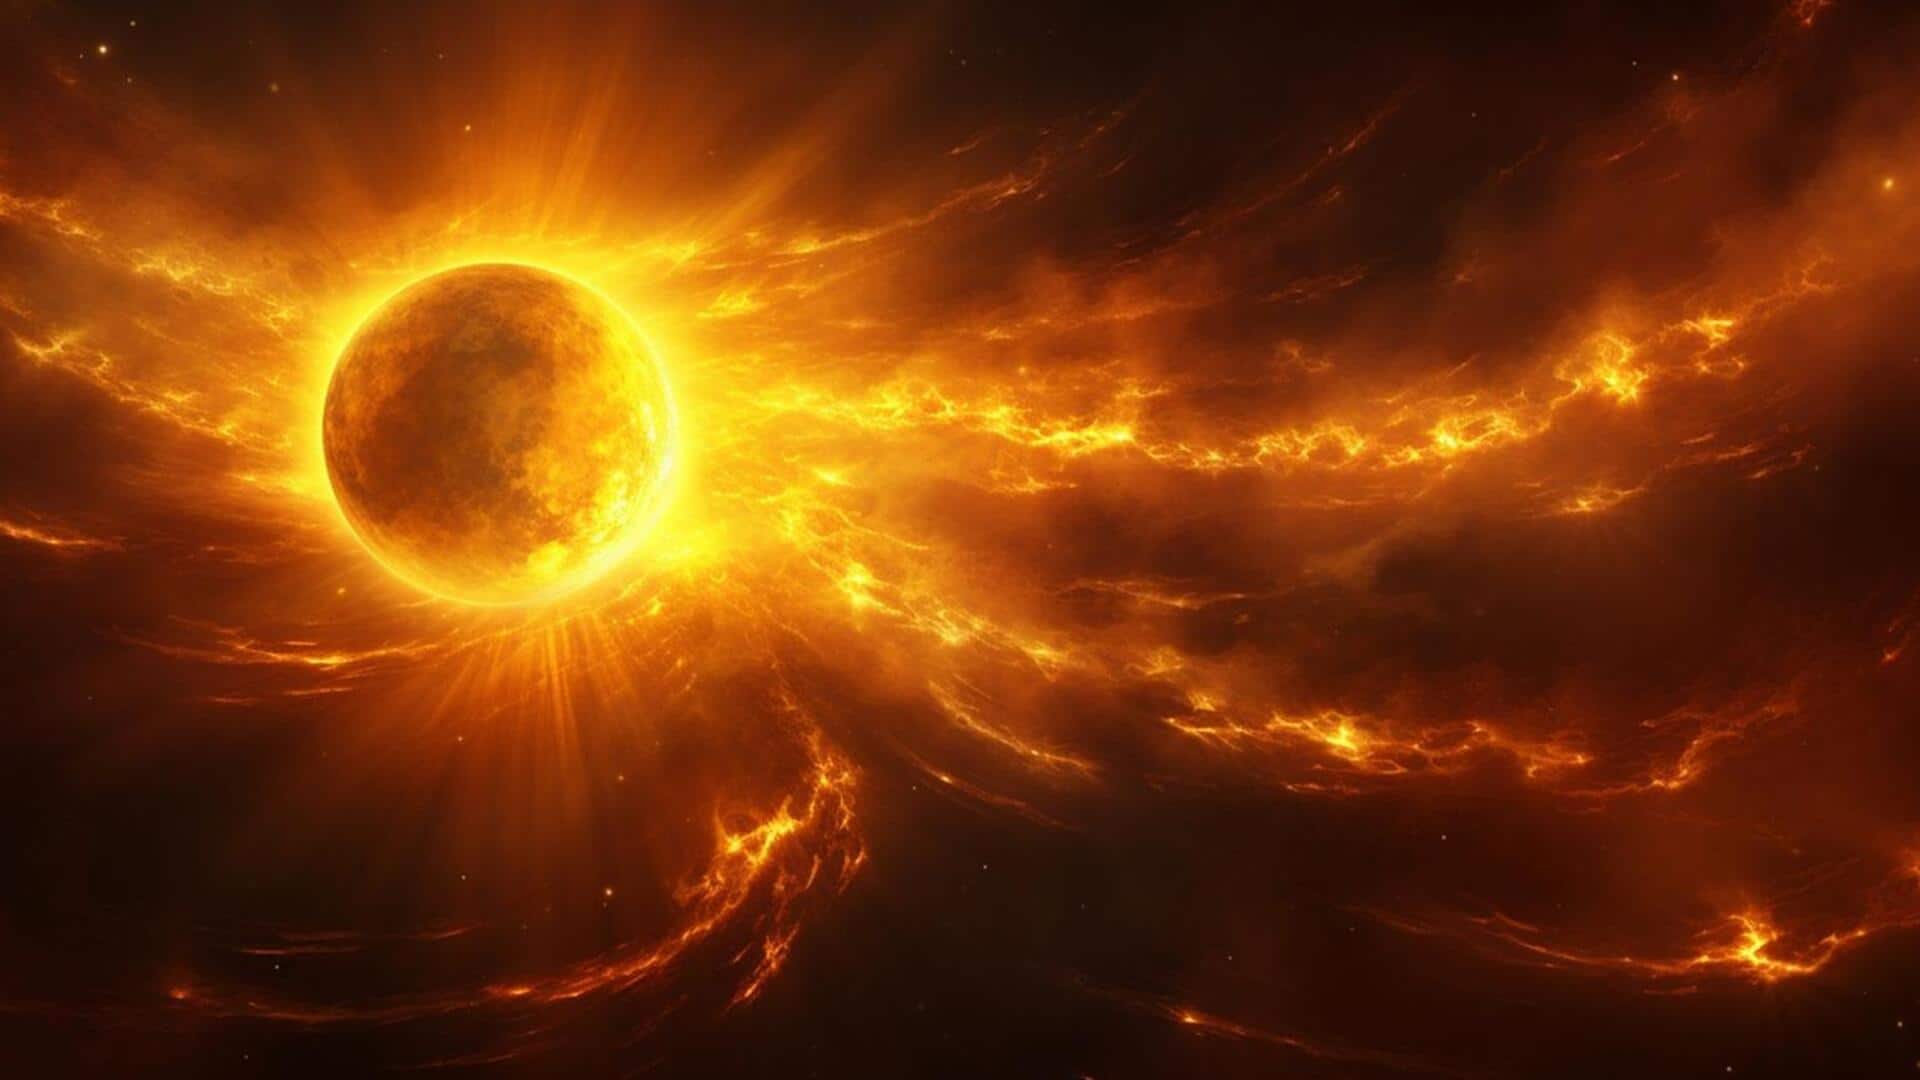 सनस्पॉट में विस्फोट से निकला शक्तिशाली सोलर फ्लेयर, पृथ्वी पर आ सकता है यह खतरा